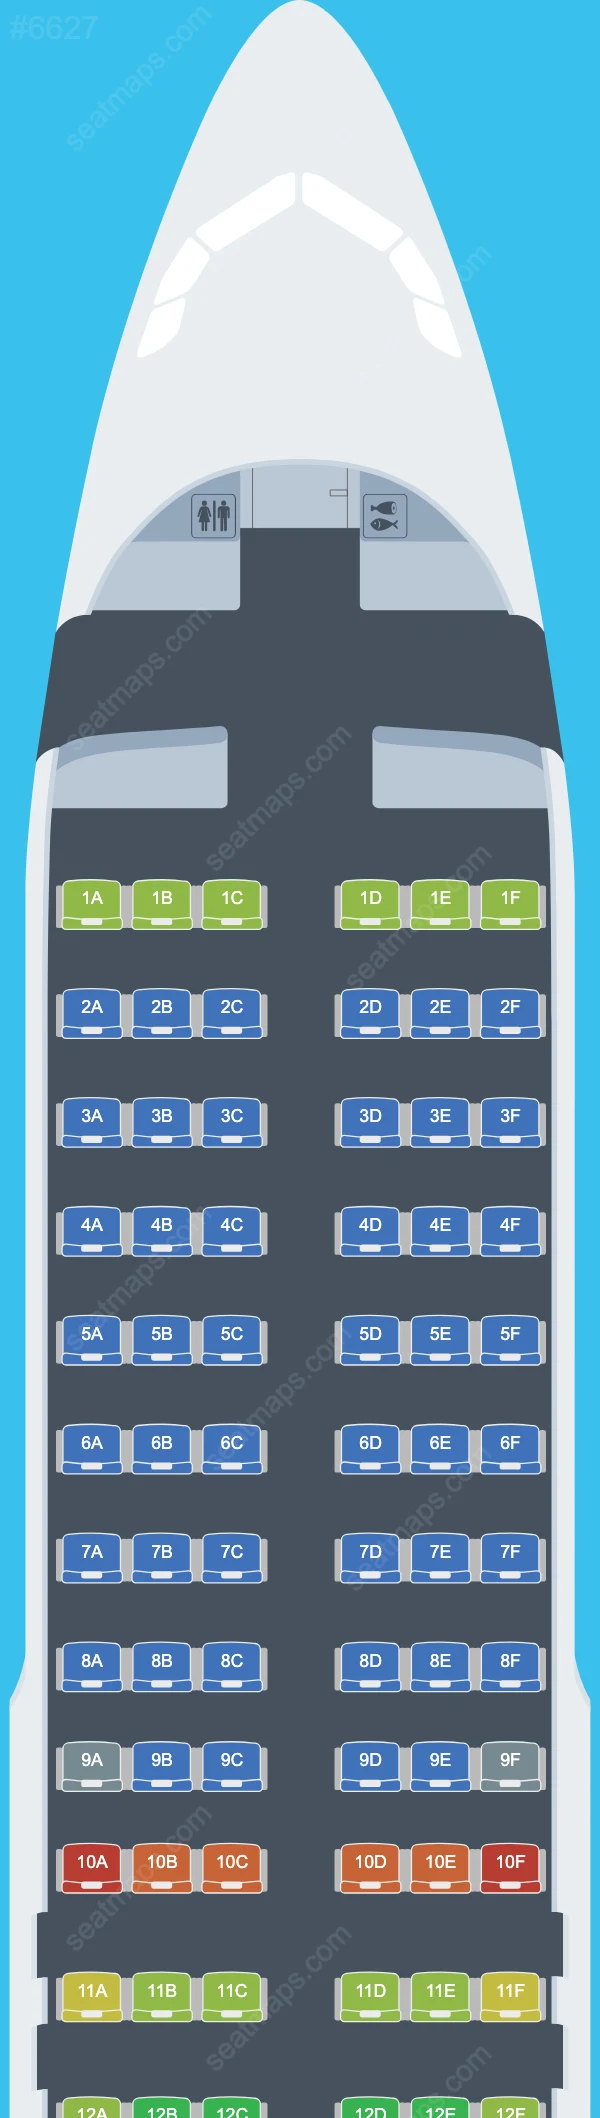 Edelweiss Air Airbus A320 Seat Maps A320-200 V.1